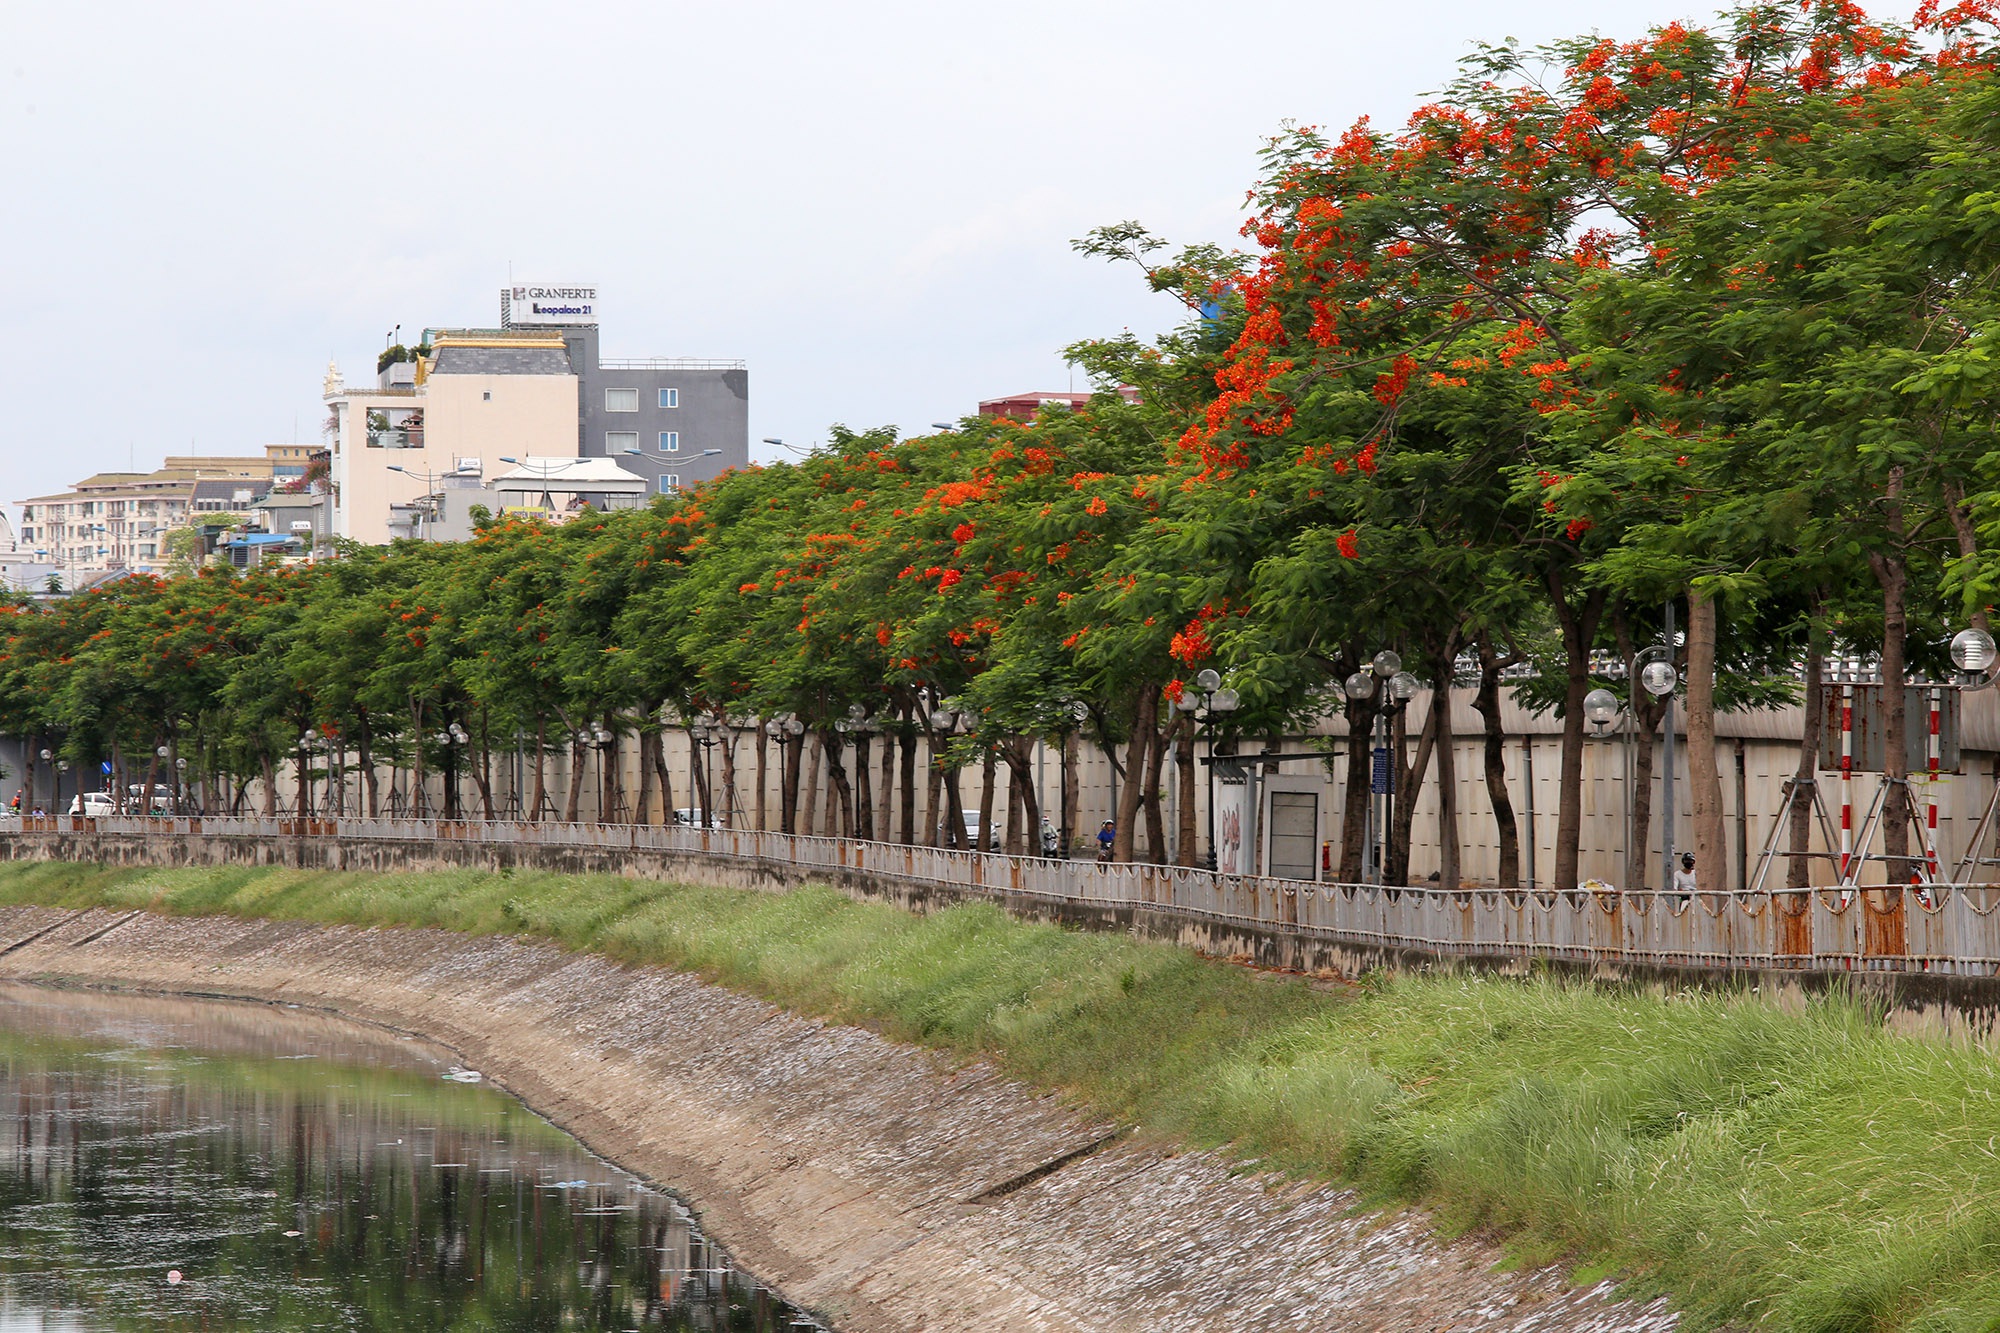  Hoa phượng vĩ được trồng nhiều suốt dọc đường Láng và một phần đường Vành đai 2. Kéo dài gần 8 km, cả 2 bờ sông Tô Lịch đang vào dịp rực rỡ nhất trong năm của mùa hoa phượng vĩ.